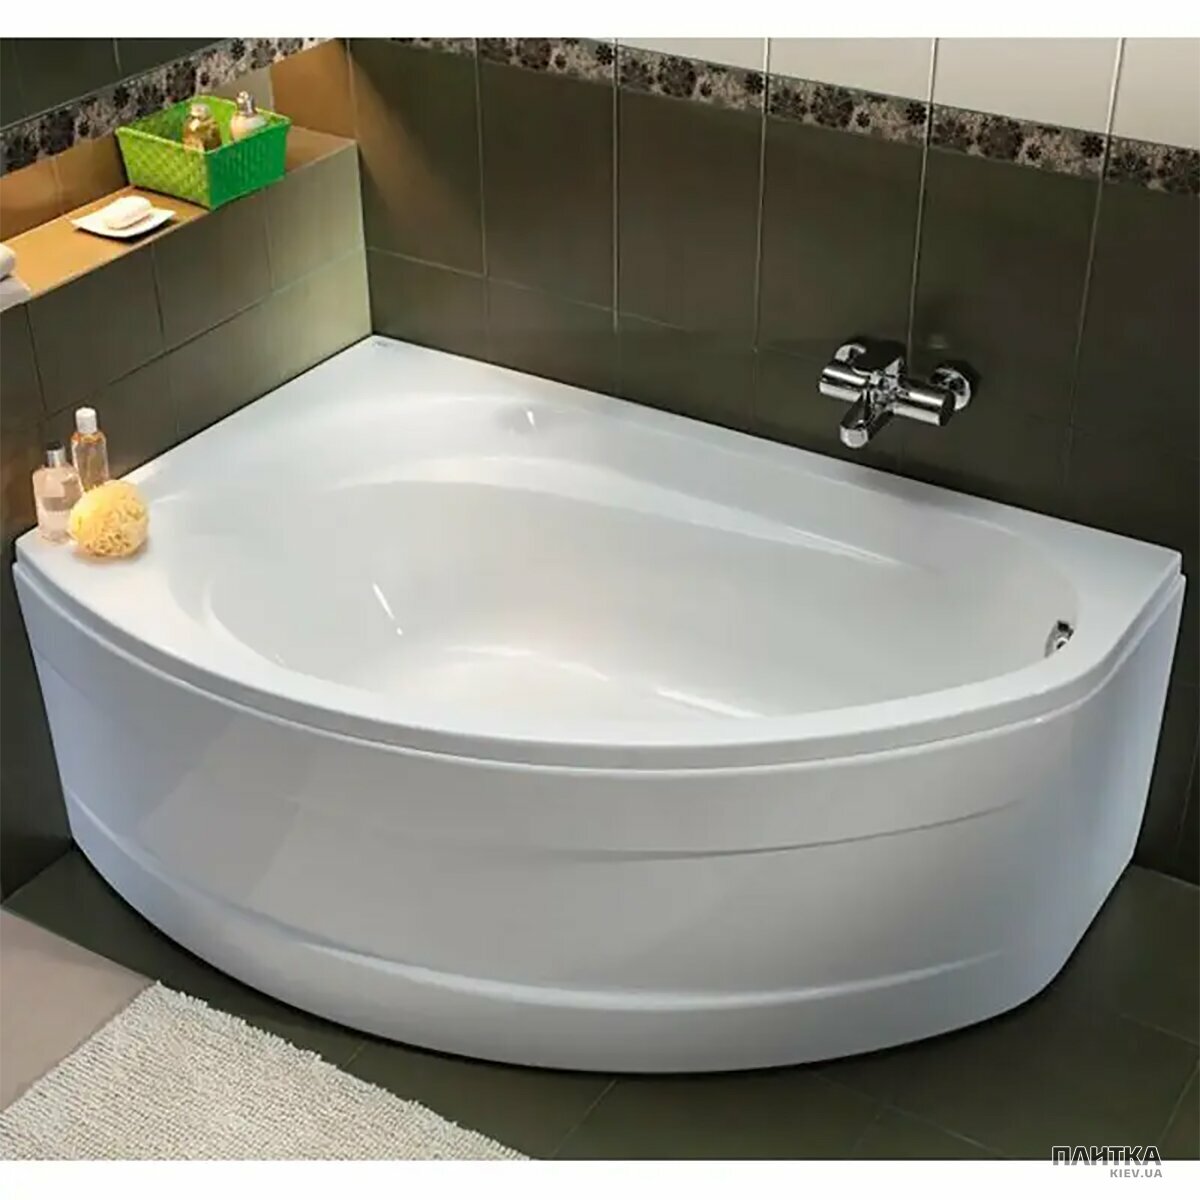 Акрилова ванна Kolo Supero 5534000 SUPERO Ванна асиметрична 145x85 см, злив справа, колір білий, в комплекті з ніжками SN14 білий